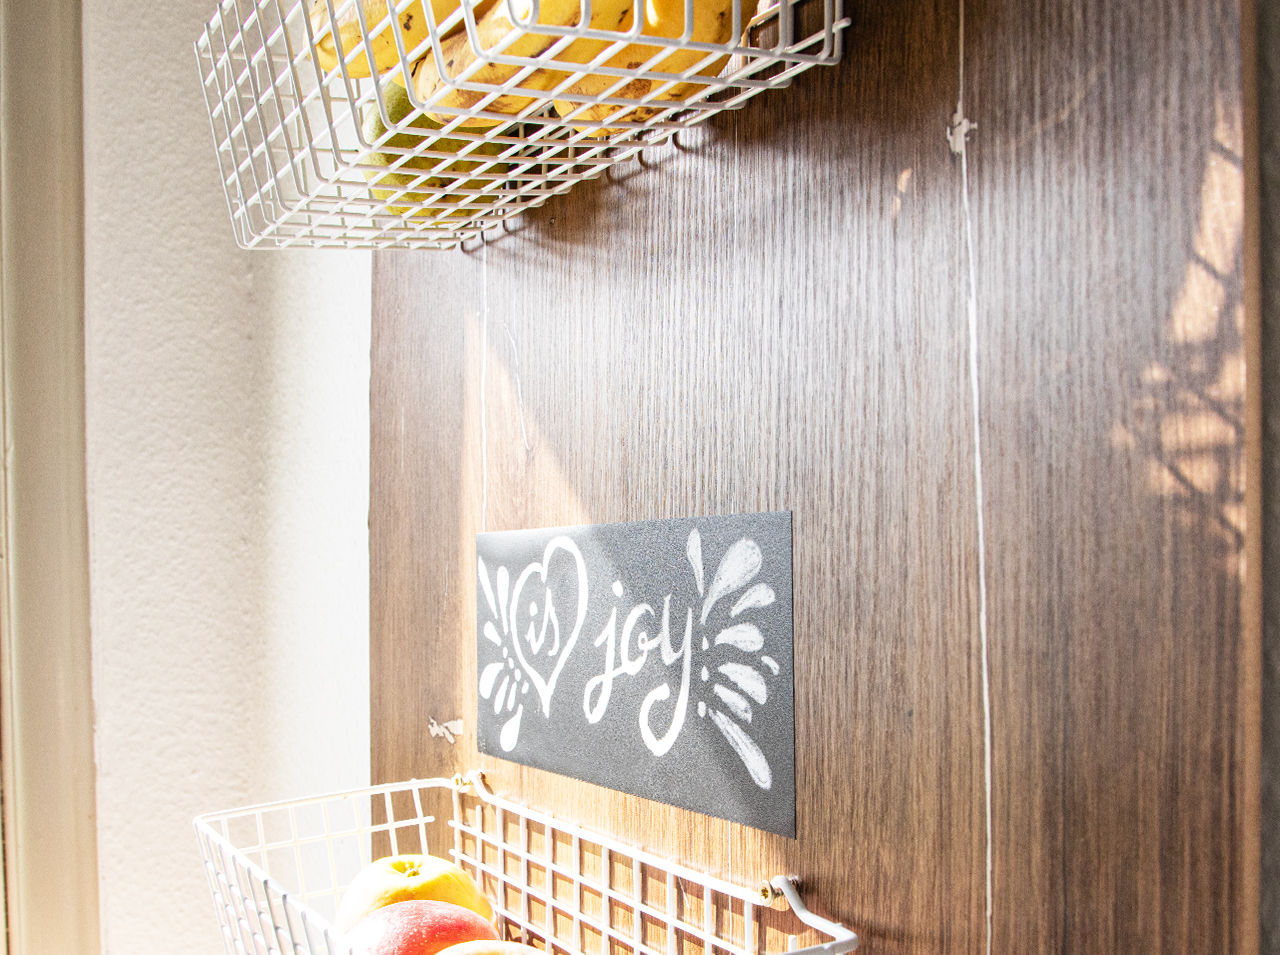 Board für die Küchenwand in dunkler Holzoptik mit aufmontierten Gitterkörben aus Metall.